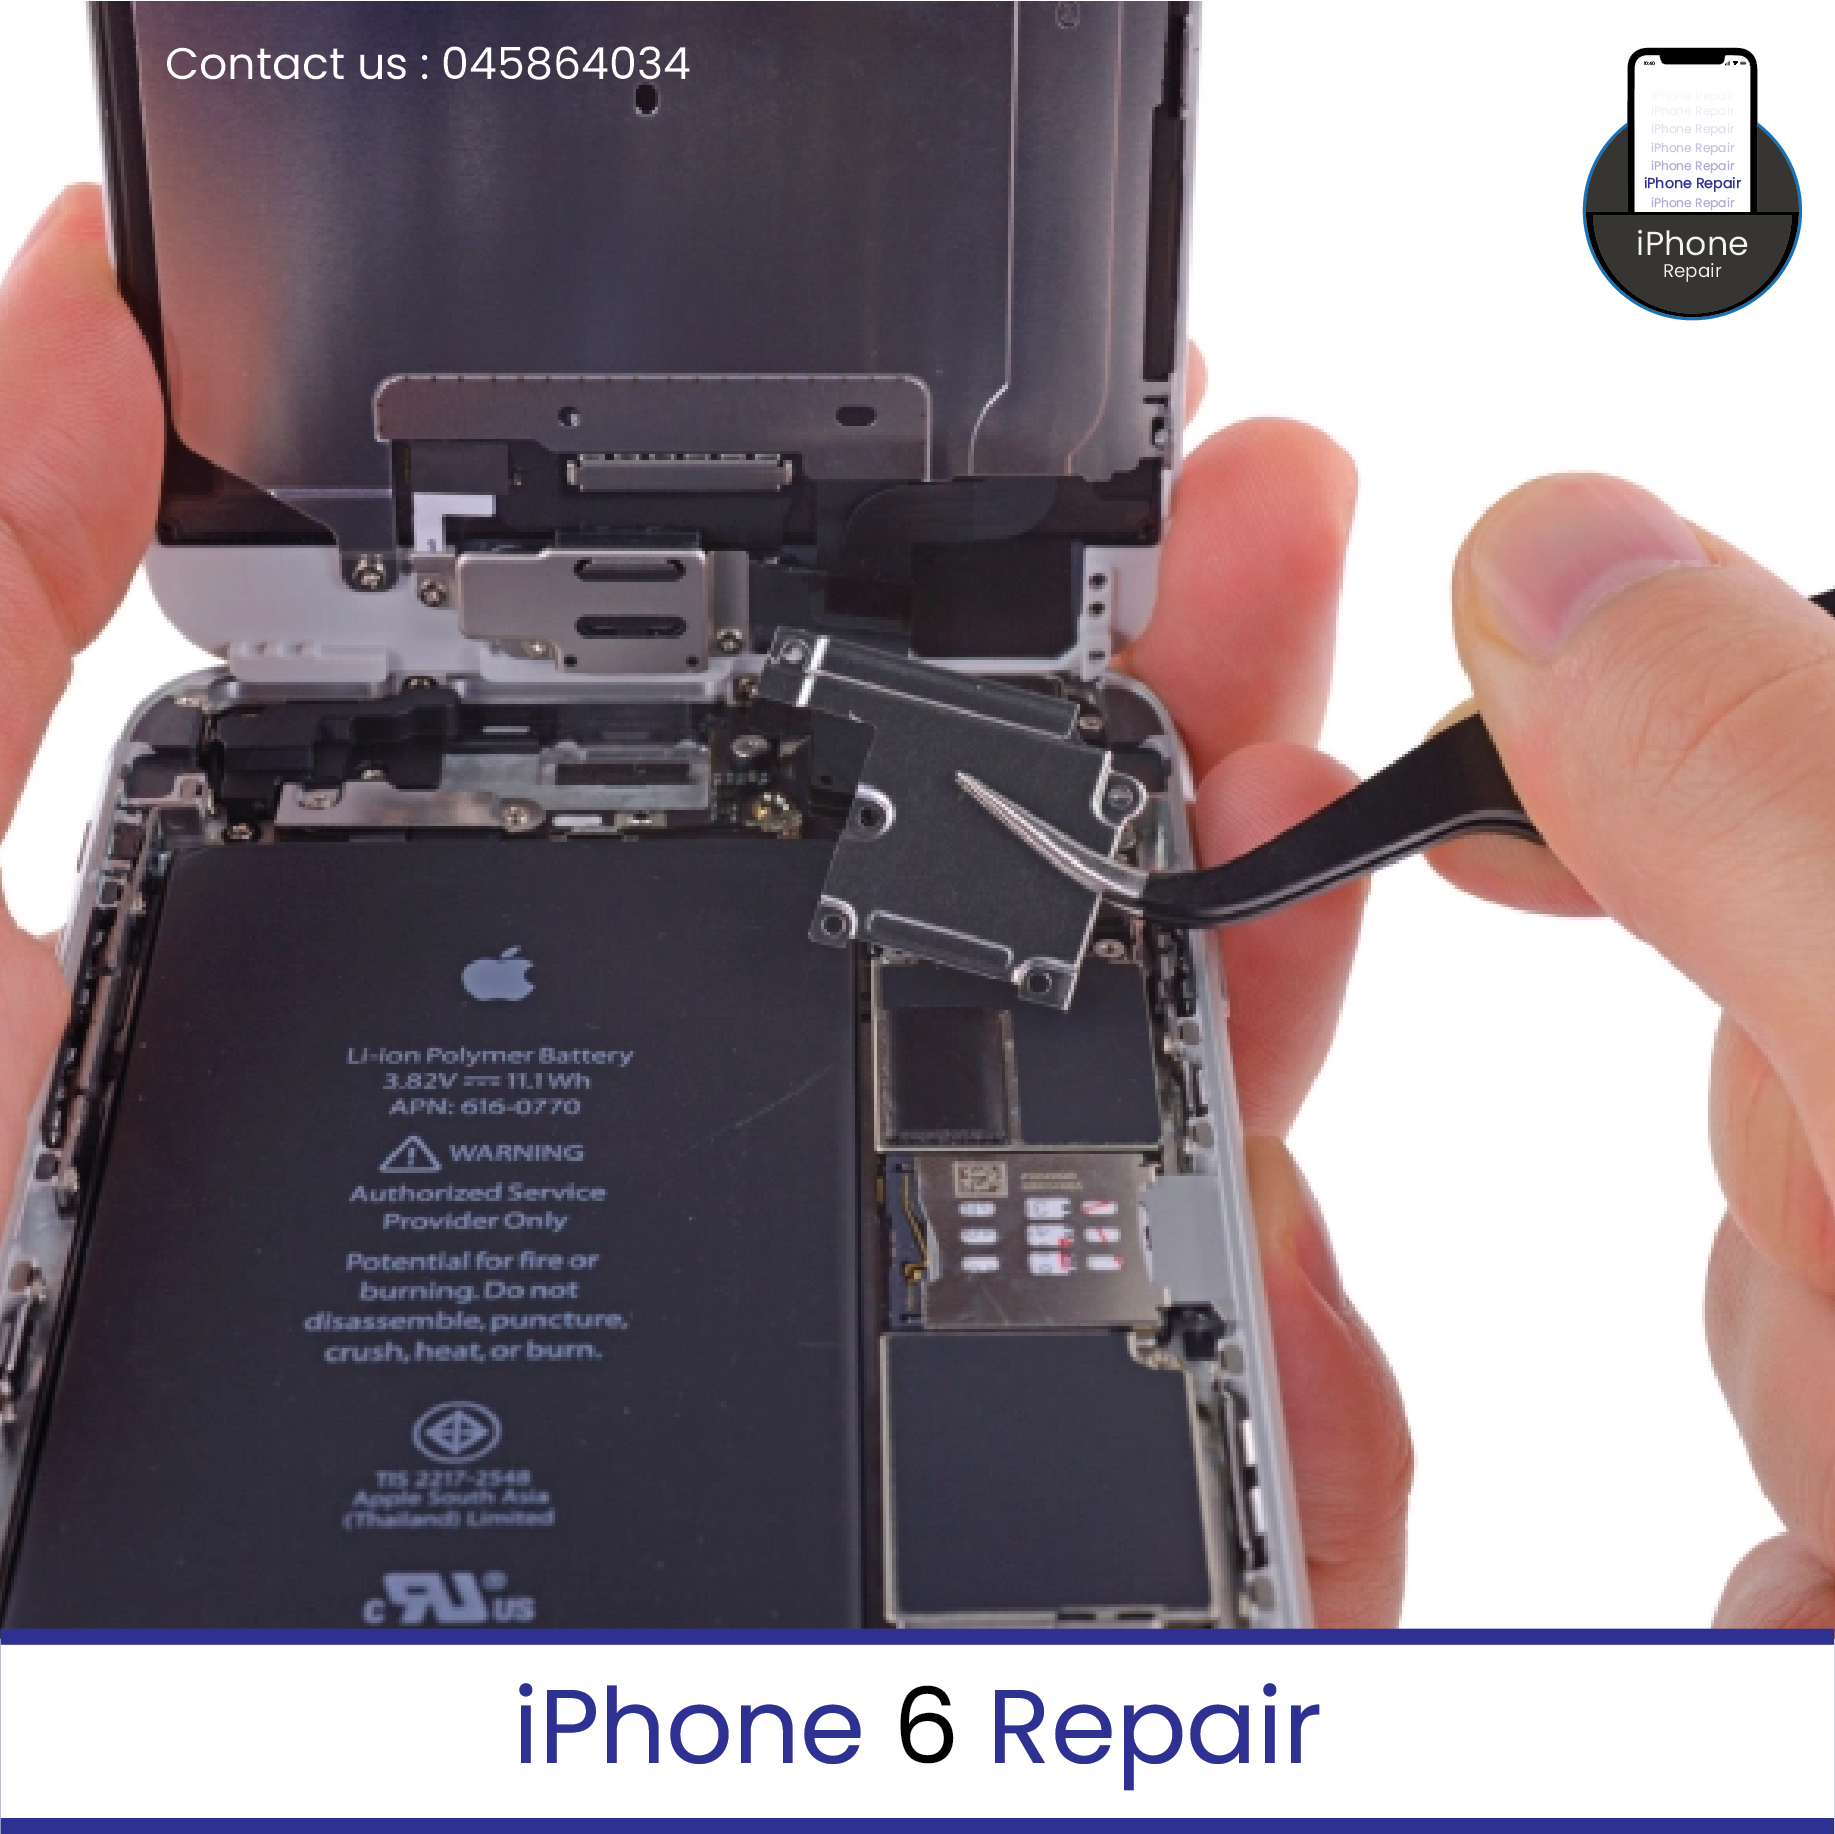 iPhone 6 repair